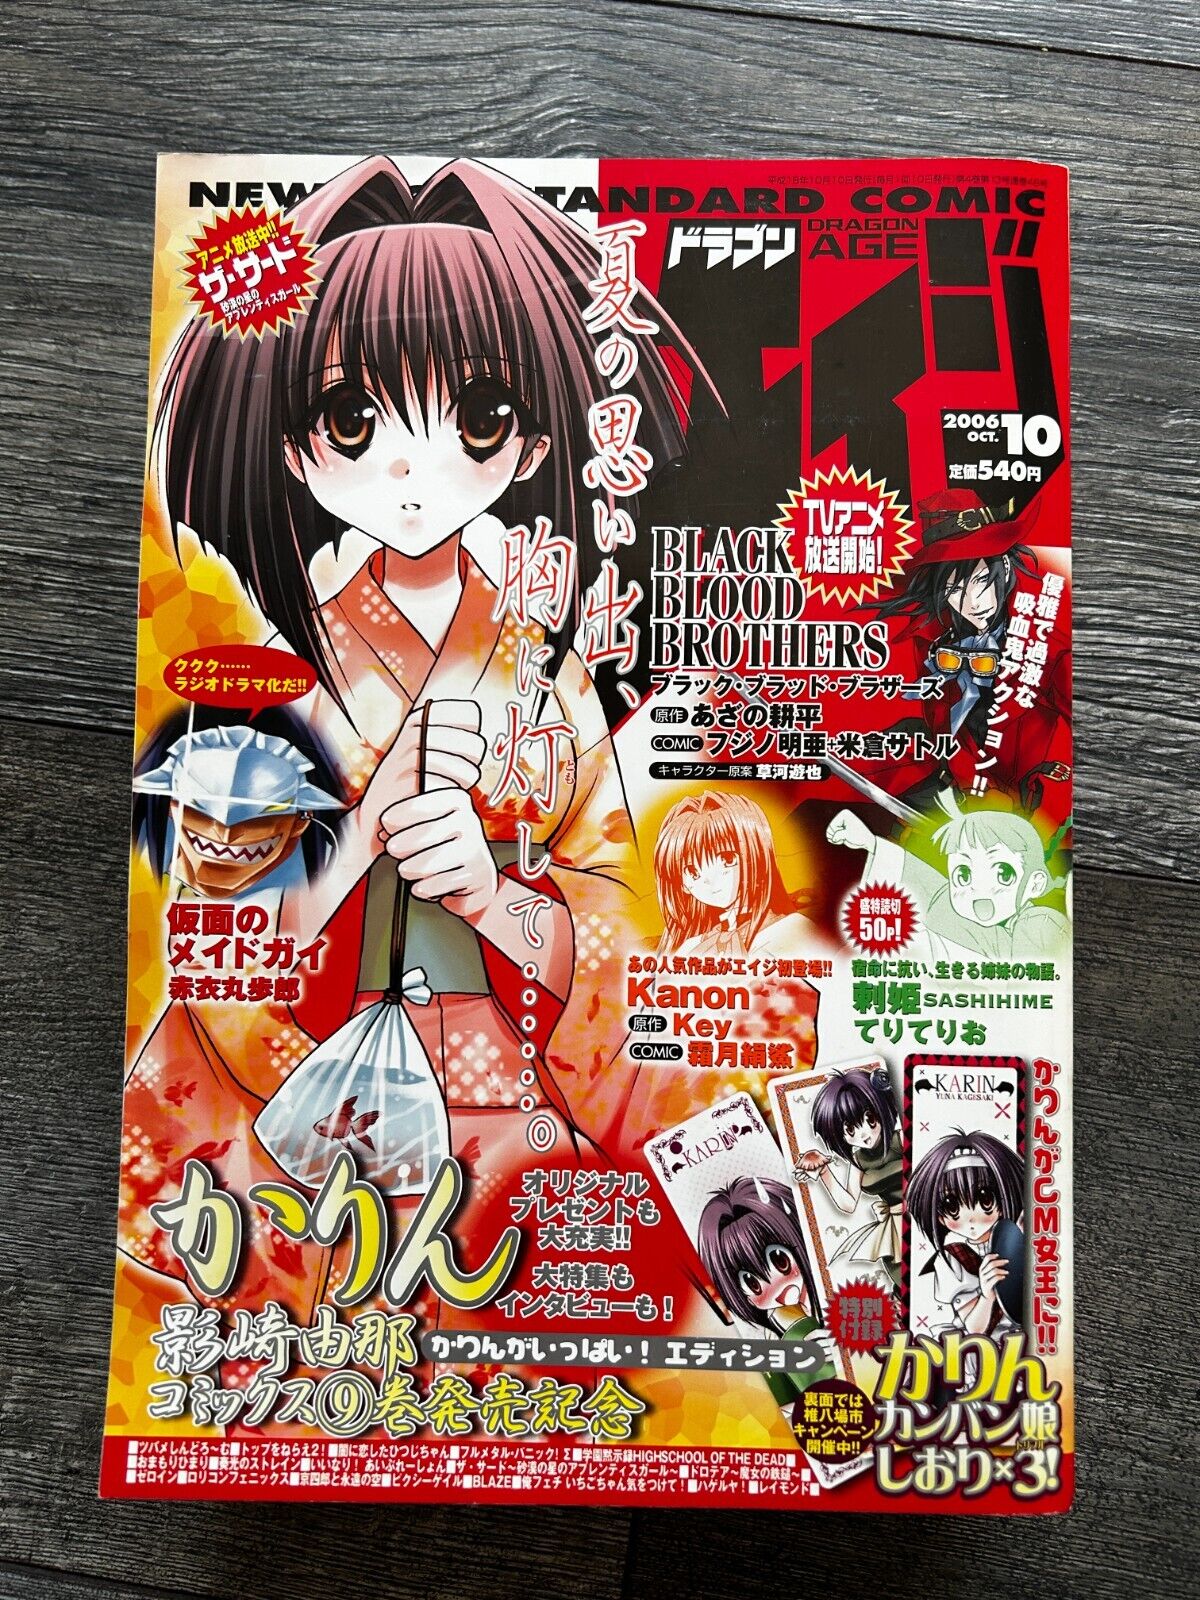 MONTHLY DRAGON AGE Manga Anime Comic Magazine October 2006 Japan Japanese